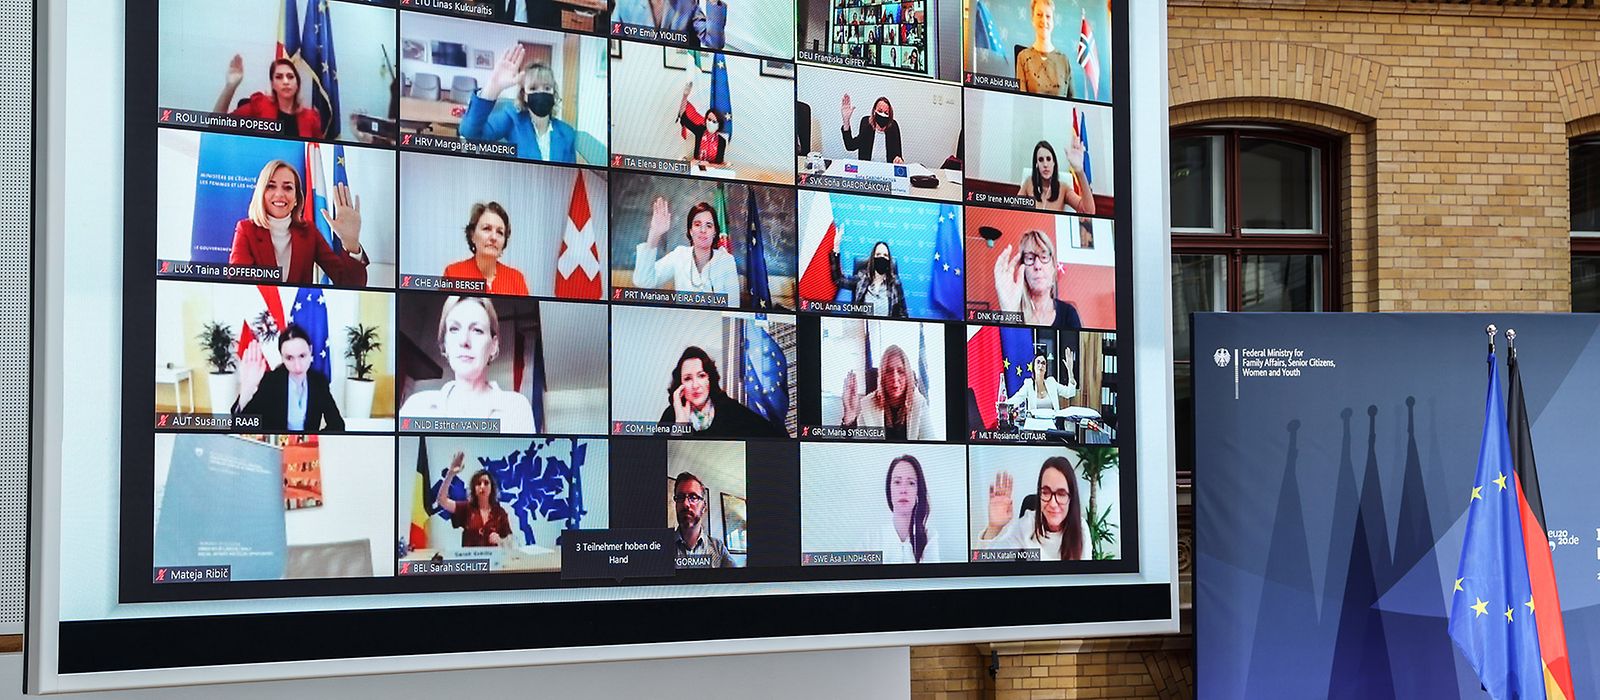 Das Foto zeigt Teilnehmerinnen und Teilnehmer einer digitalen Konferenz